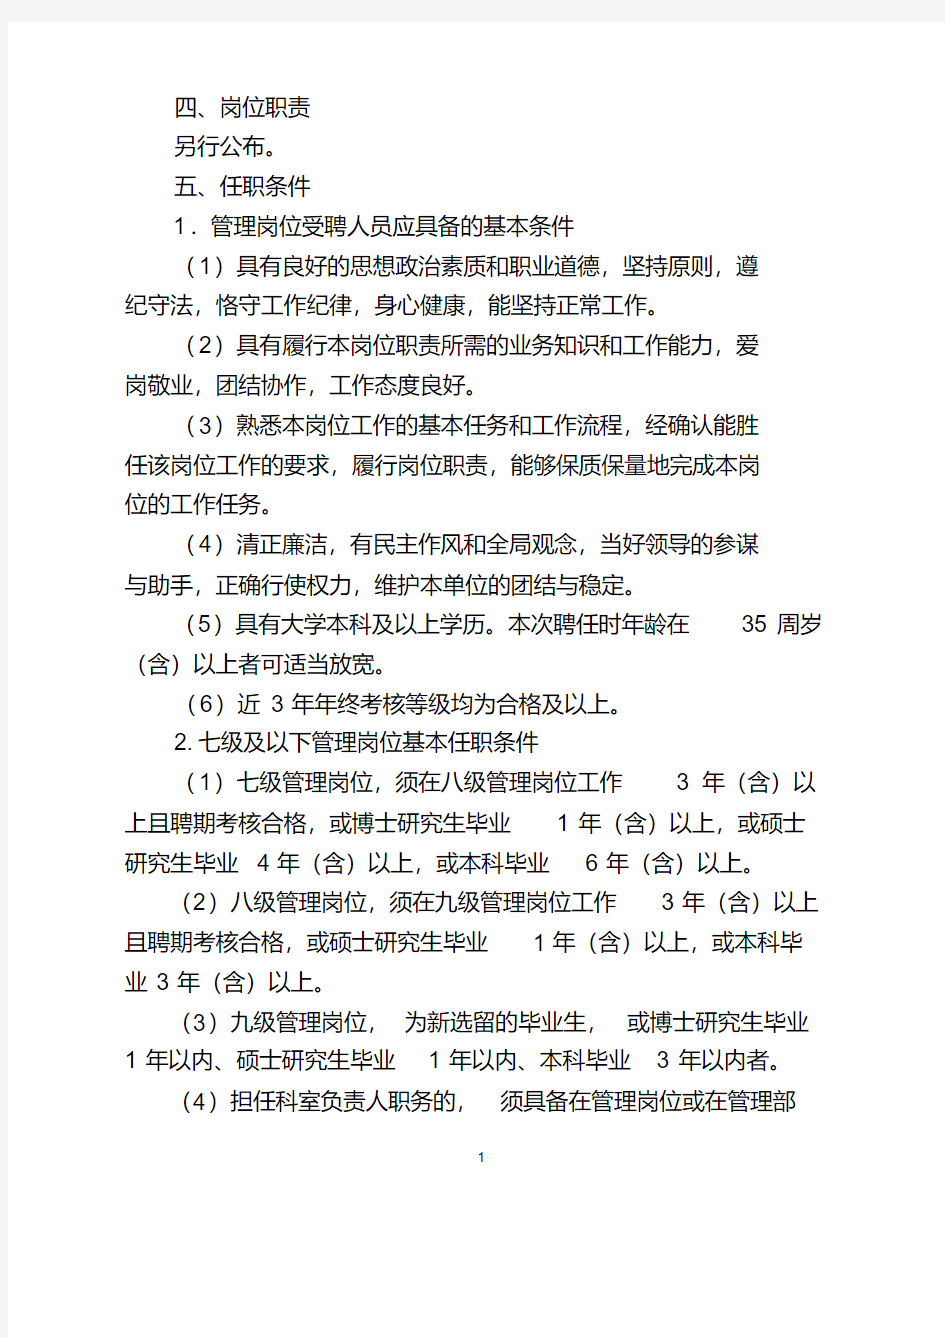 北京中医药大学校本部七级及以下管理岗位聘任方案